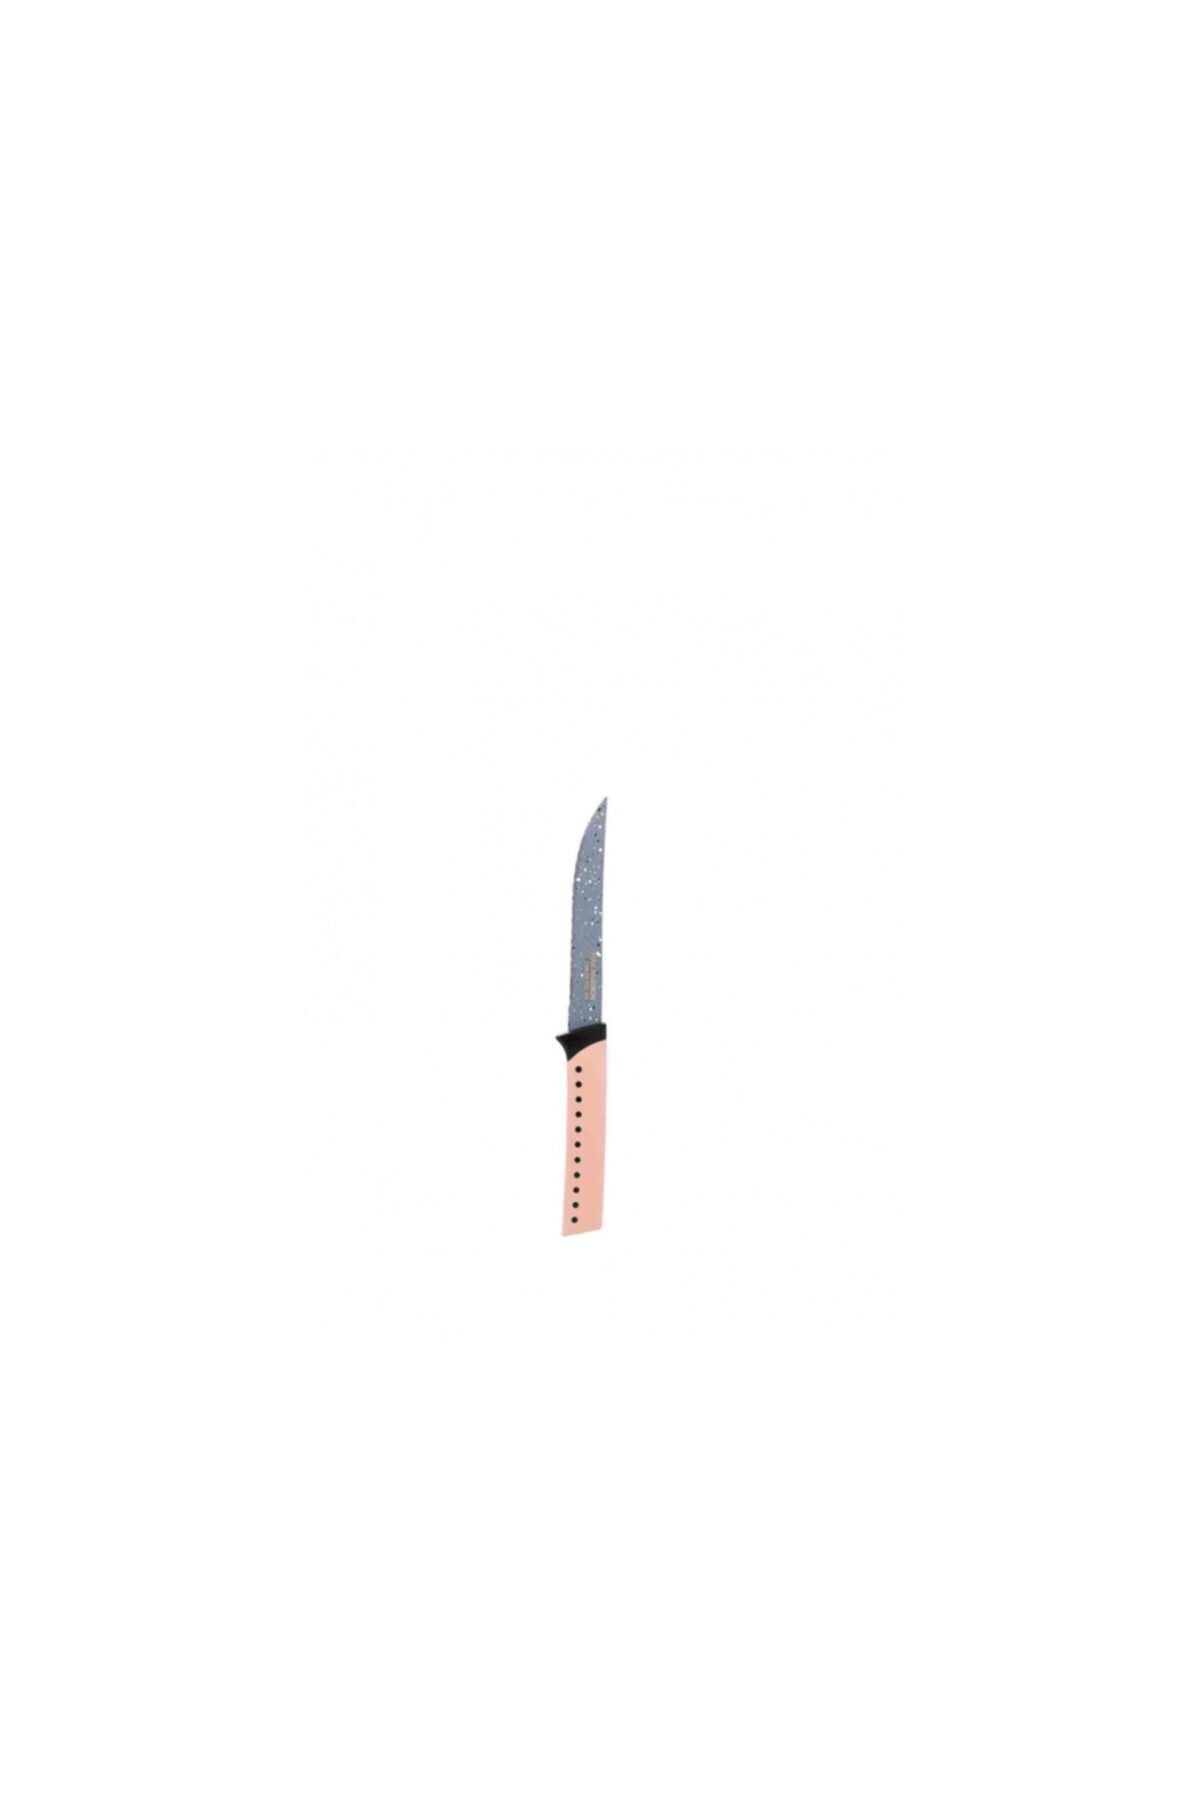 Taç 21 Cm Sebze Bıçağı Soft Pembe